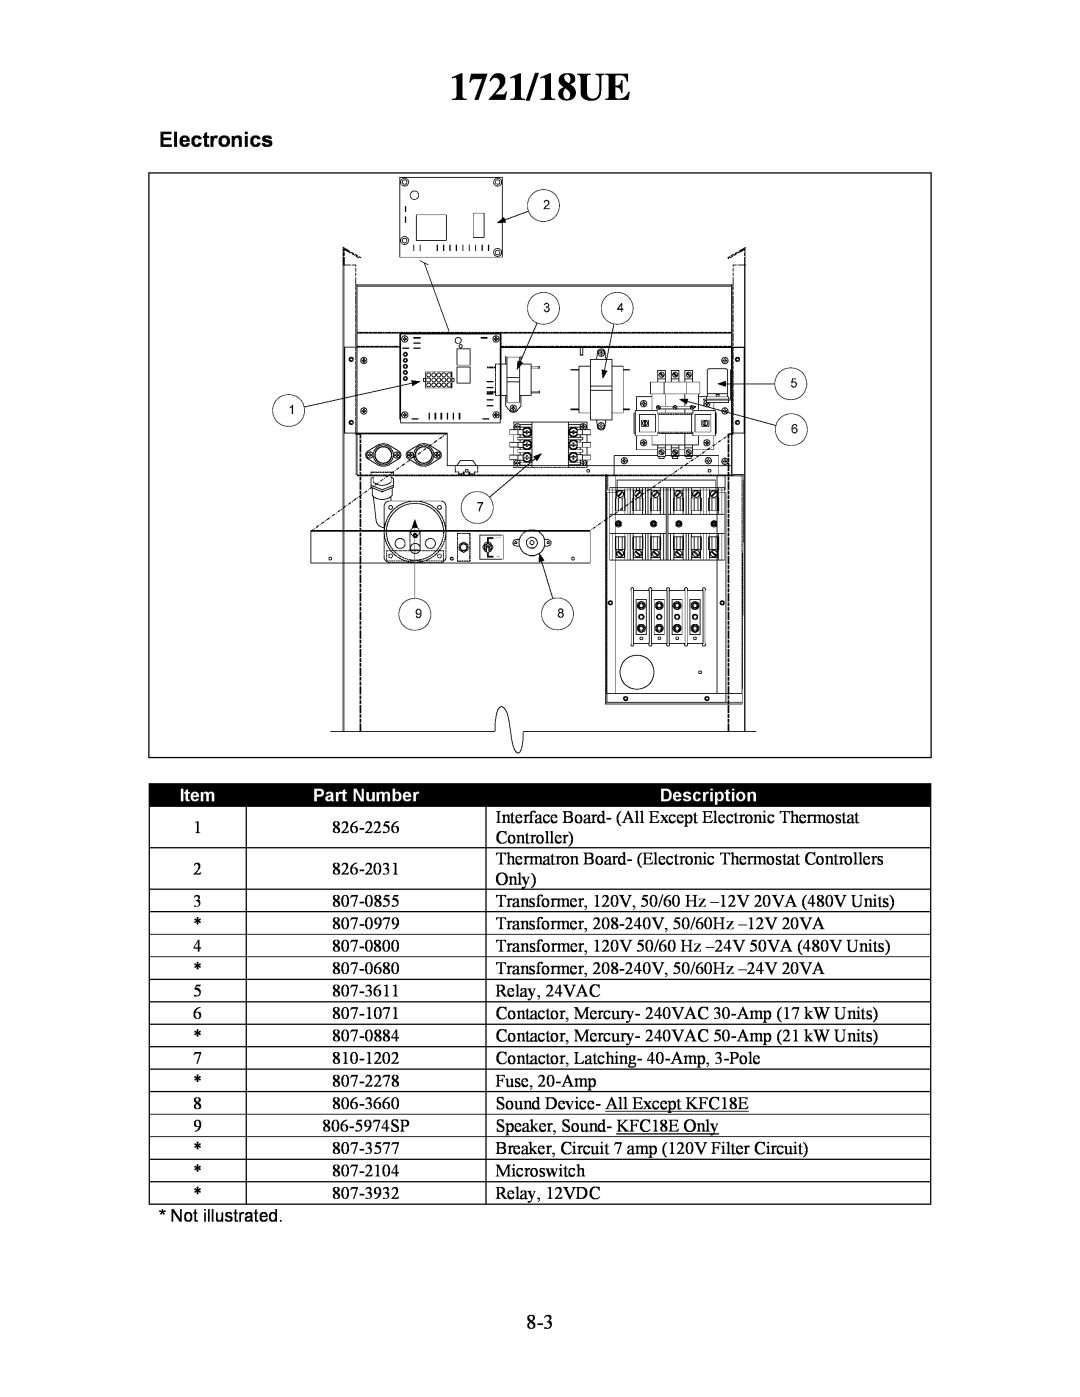 Frymaster H50 manual 1721/18UE, Electronics, Part Number, Description 